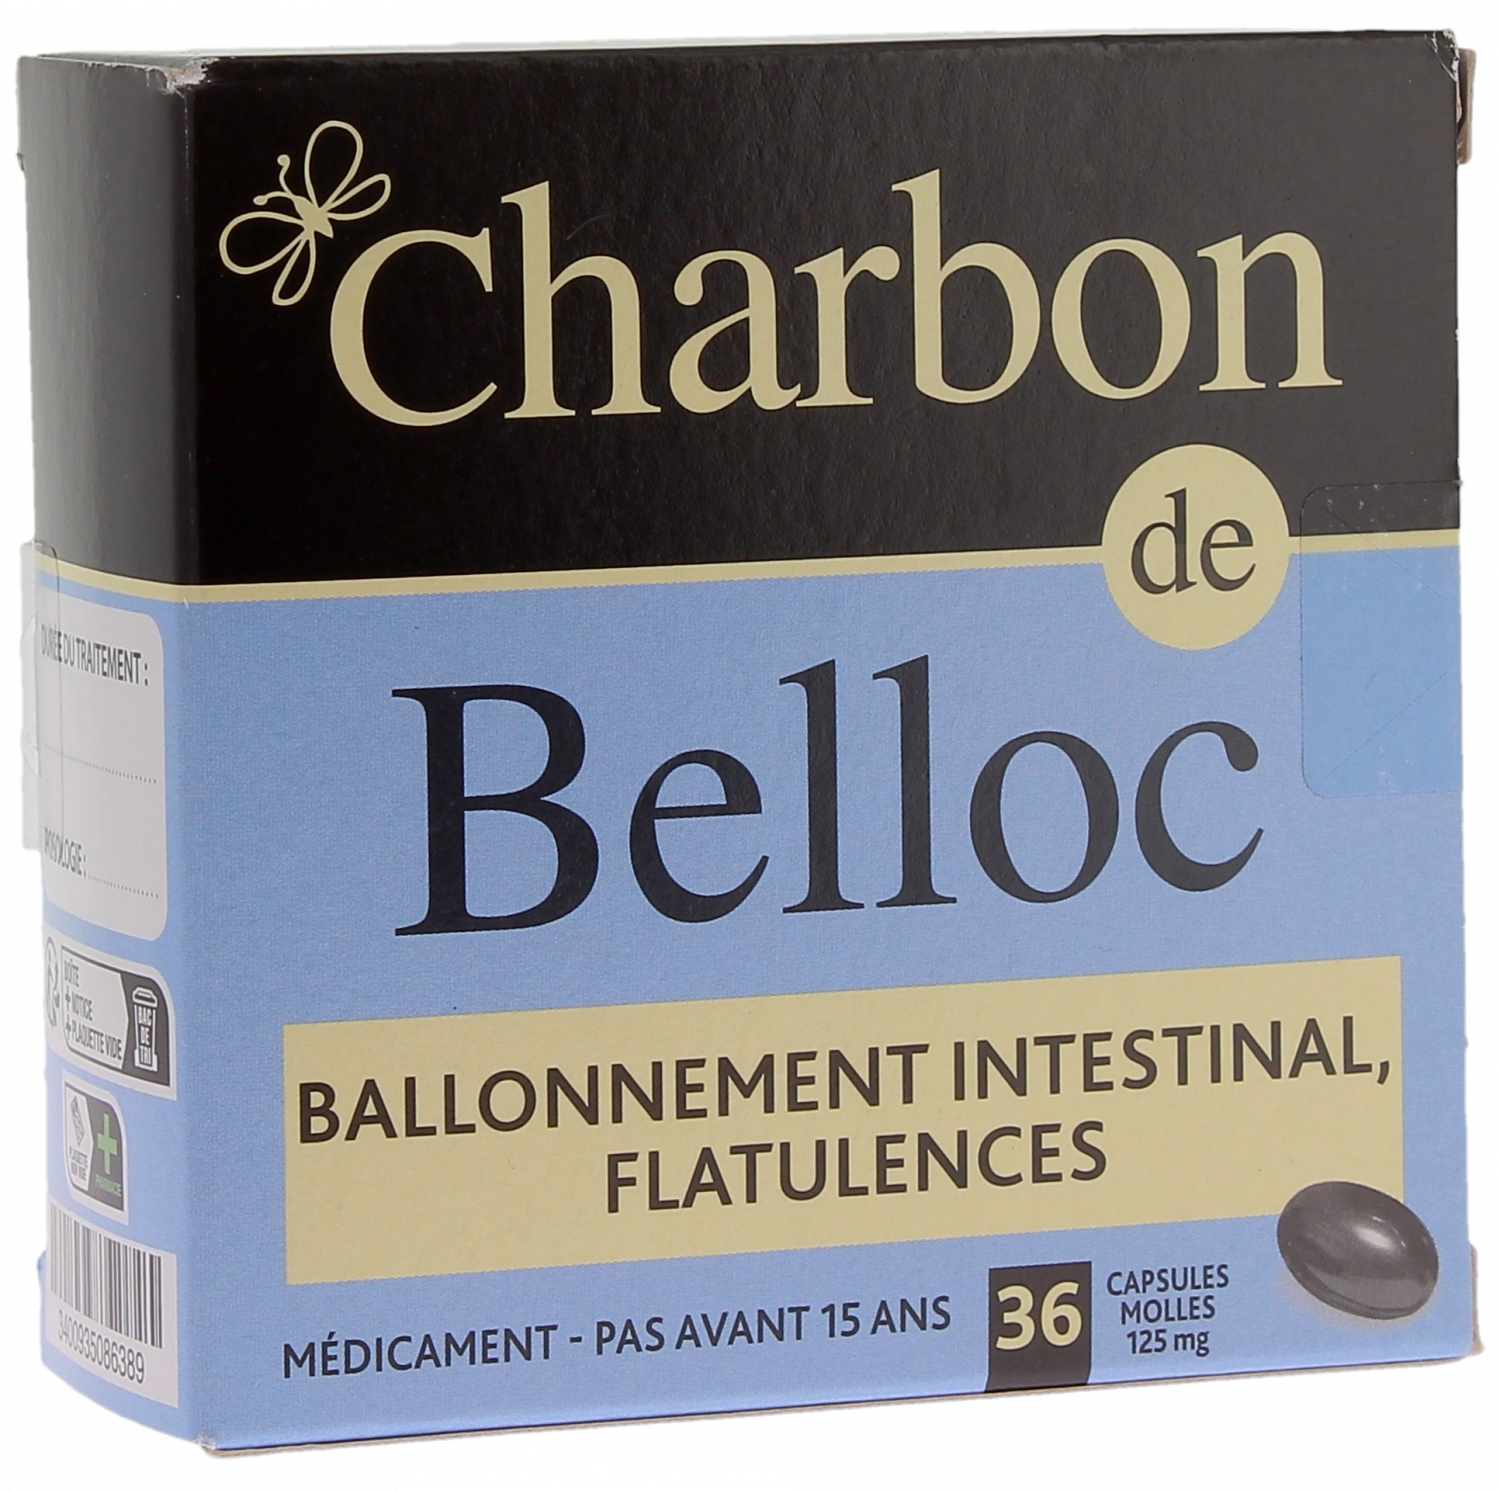 Charbon de Belloc ballonnement intestinal 125g - boîte de 36 capsules molles